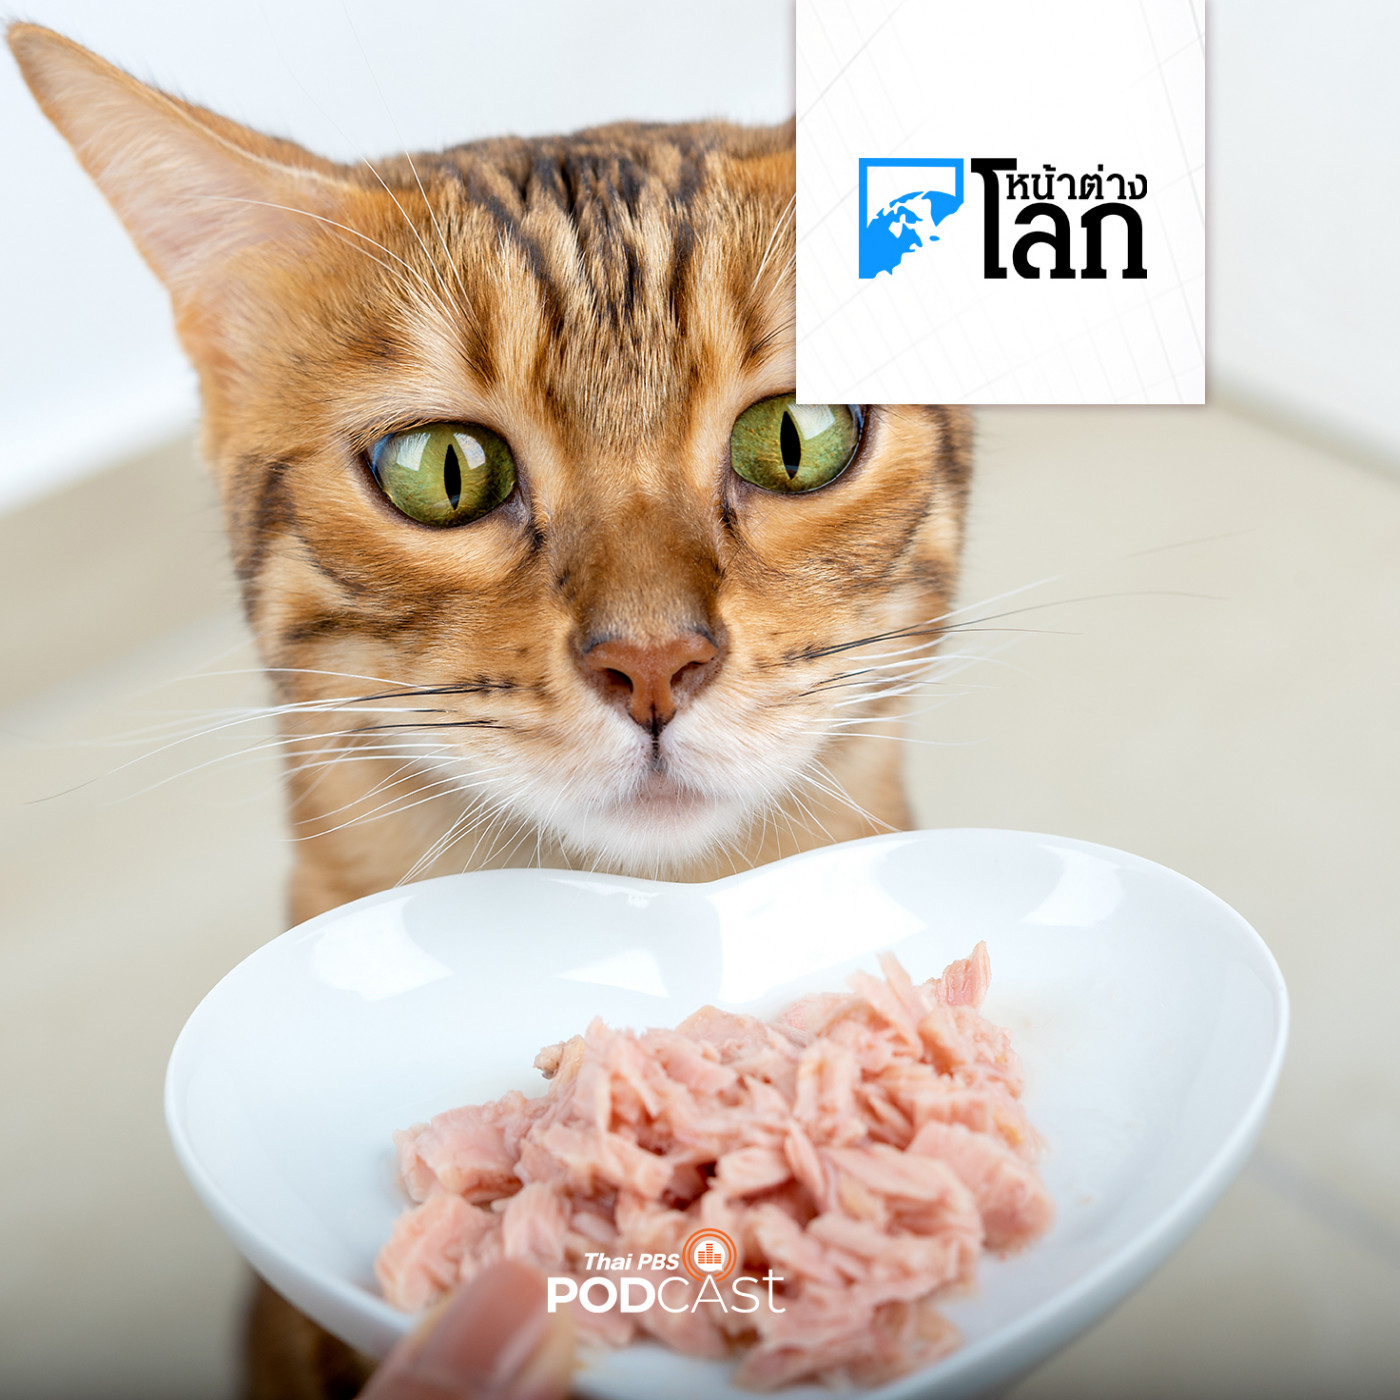 หน้าต่างโลก : ทำไมแมวชอบรสชาติปลาทูน่ามากที่สุด